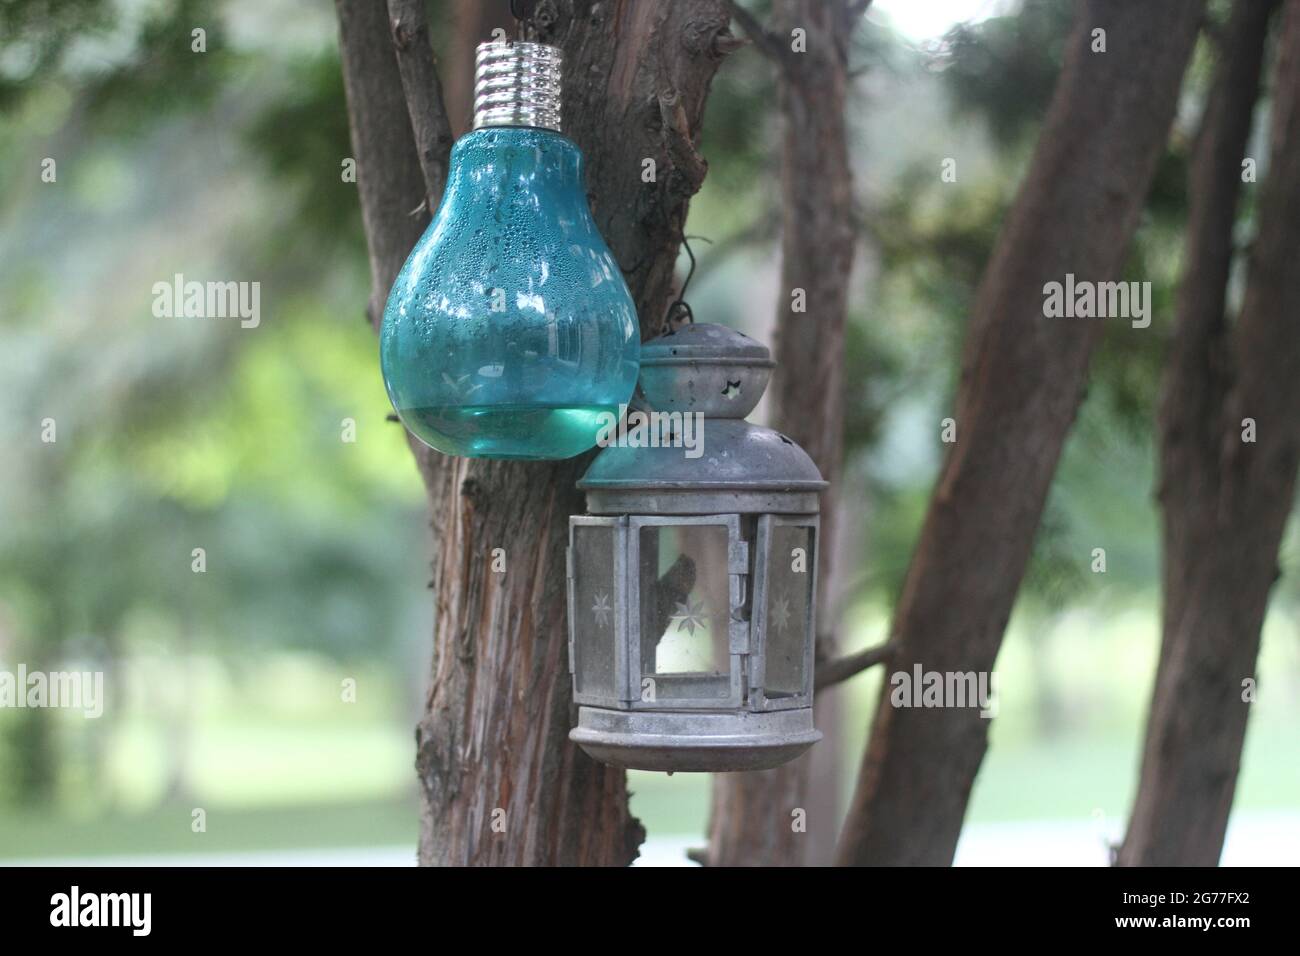 Blaue Glühbirne und Metalllaterne, die an einem Baum hängt Stockfoto